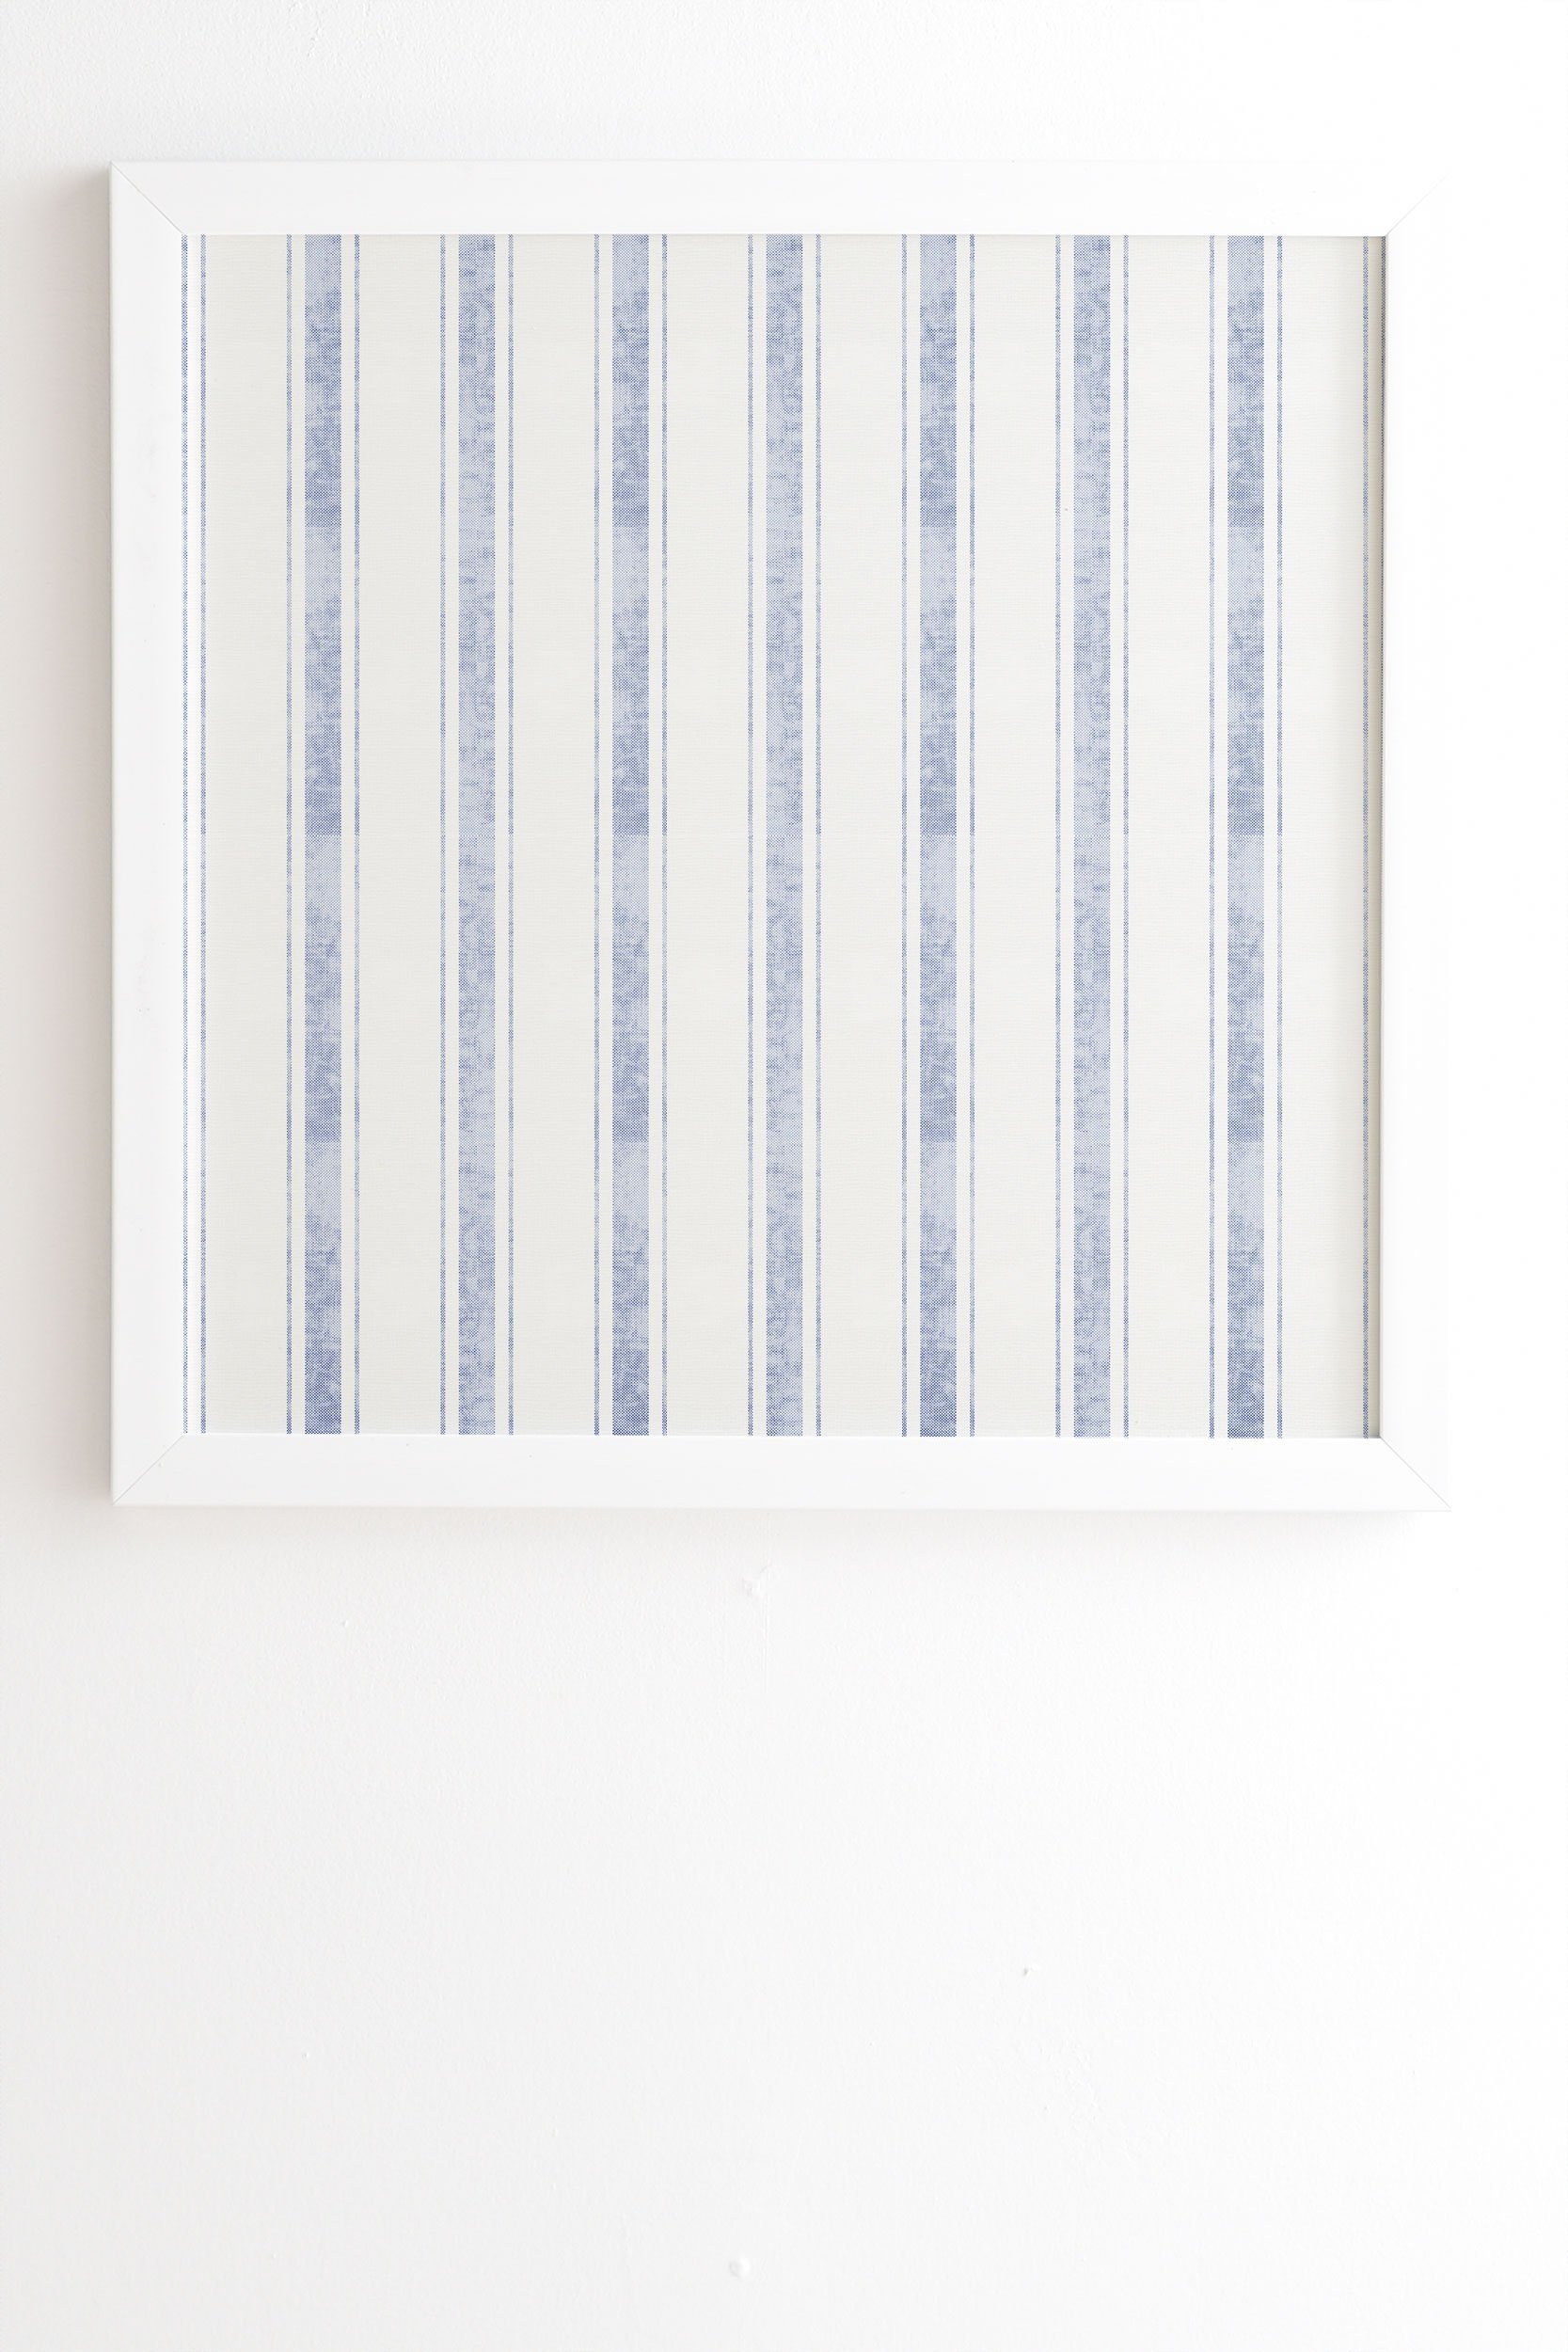 Holli Zollinger AEGEAN BOLD STRIPE White Framed Wall Art - 19" x 22.4" - Image 1